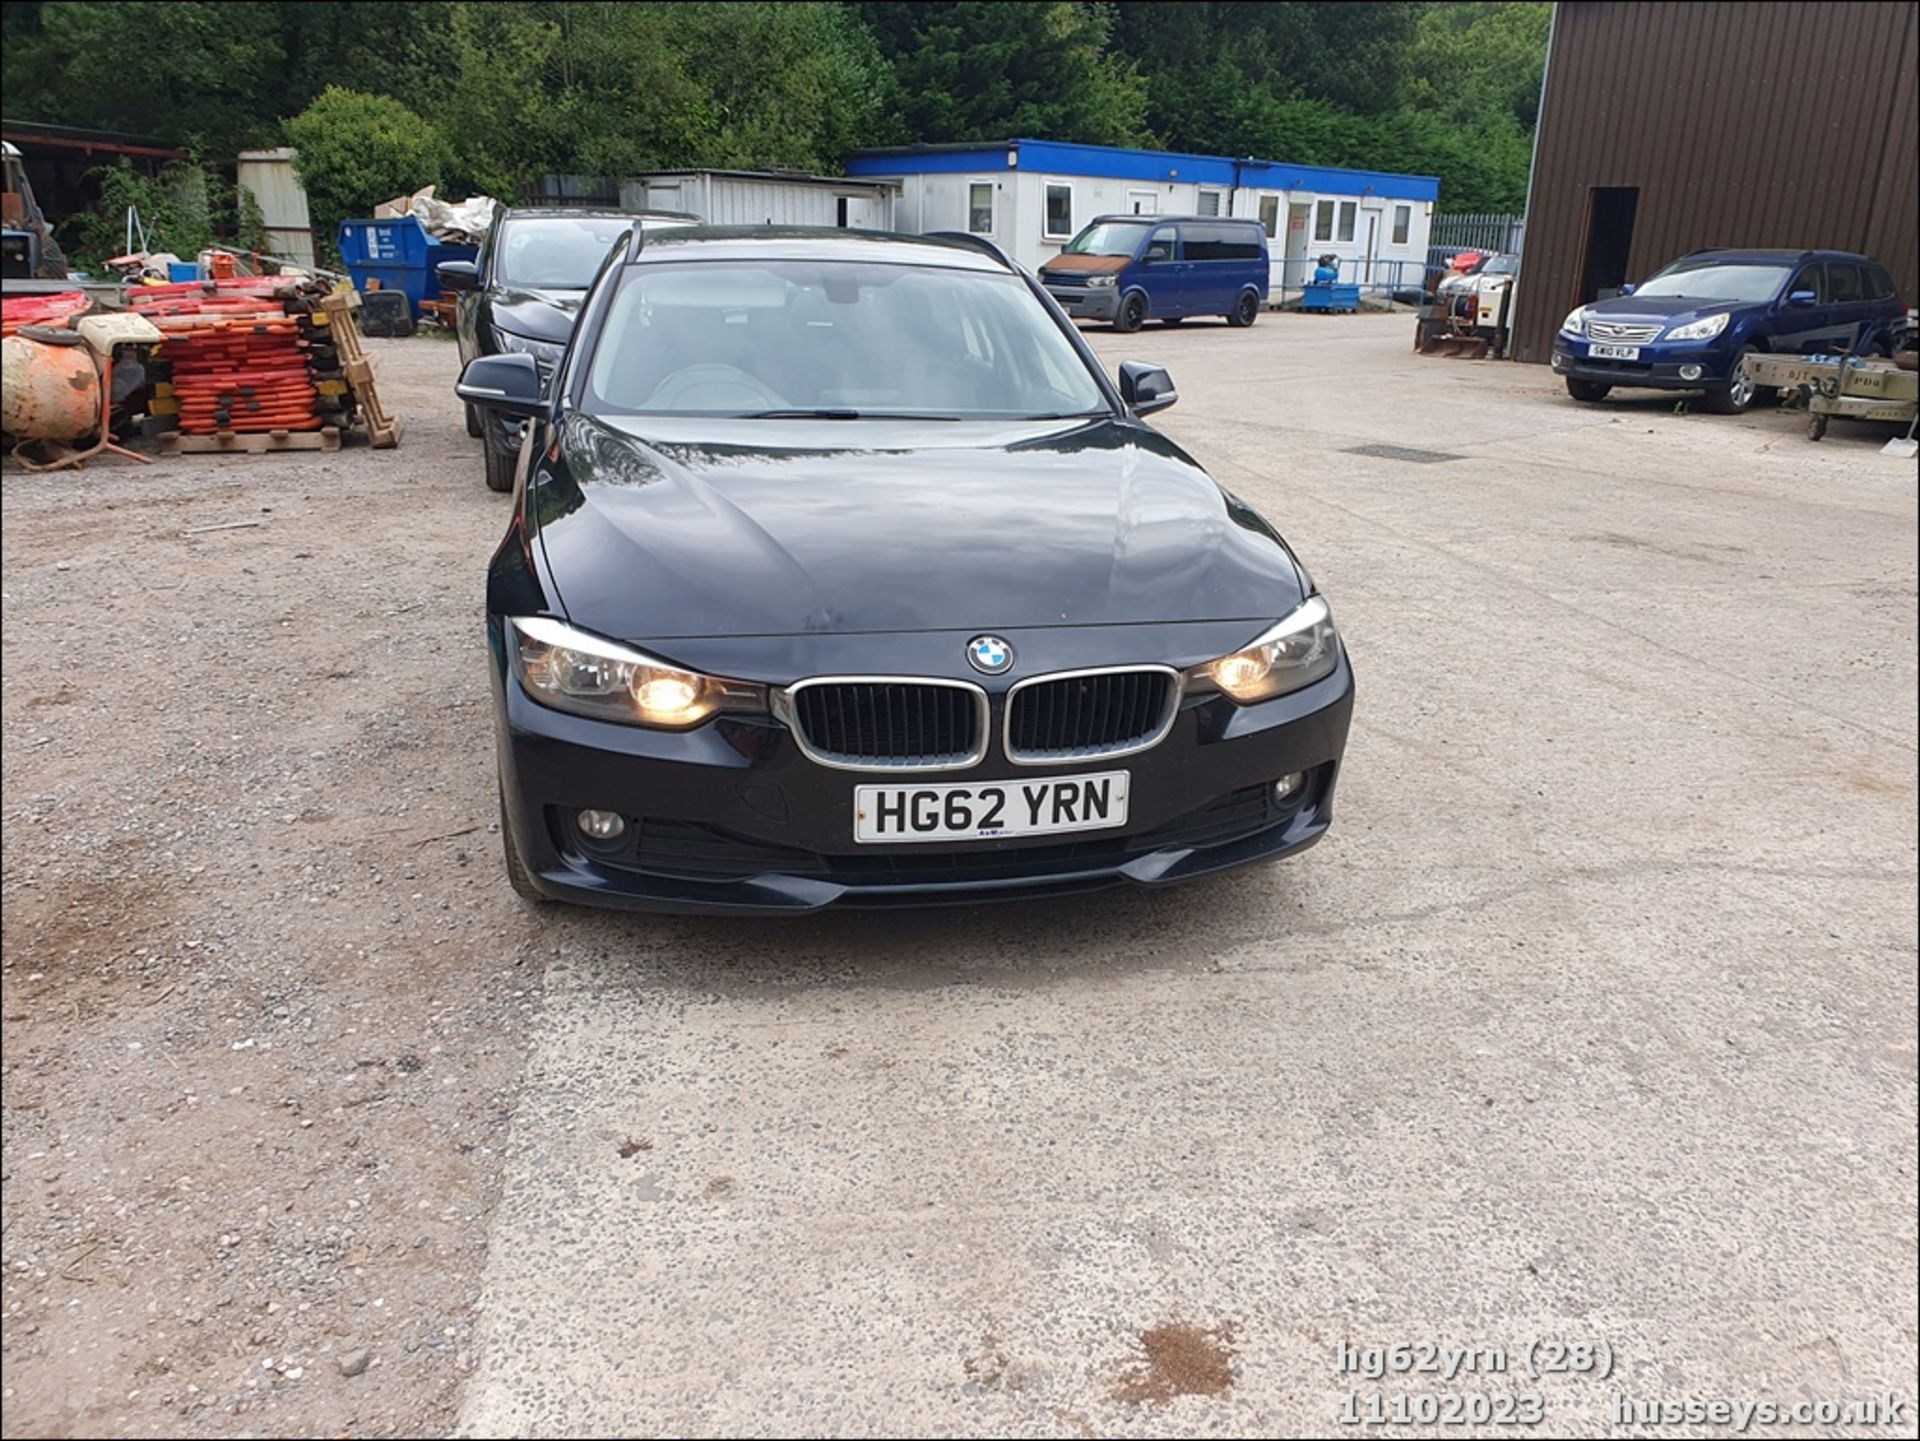 13/62 BMW 318D SE - 1995cc 5dr Estate (Black, 201k) - Image 29 of 58